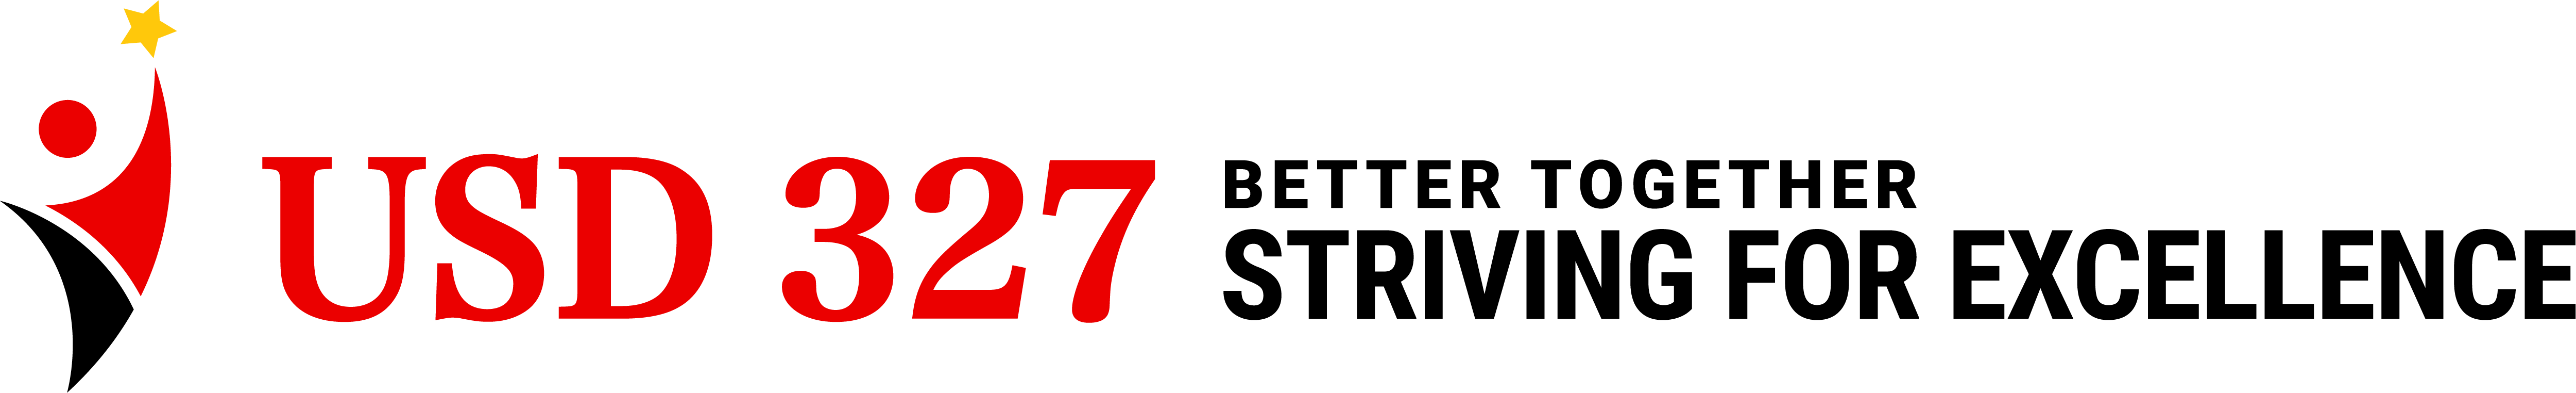 USD 327 Logo